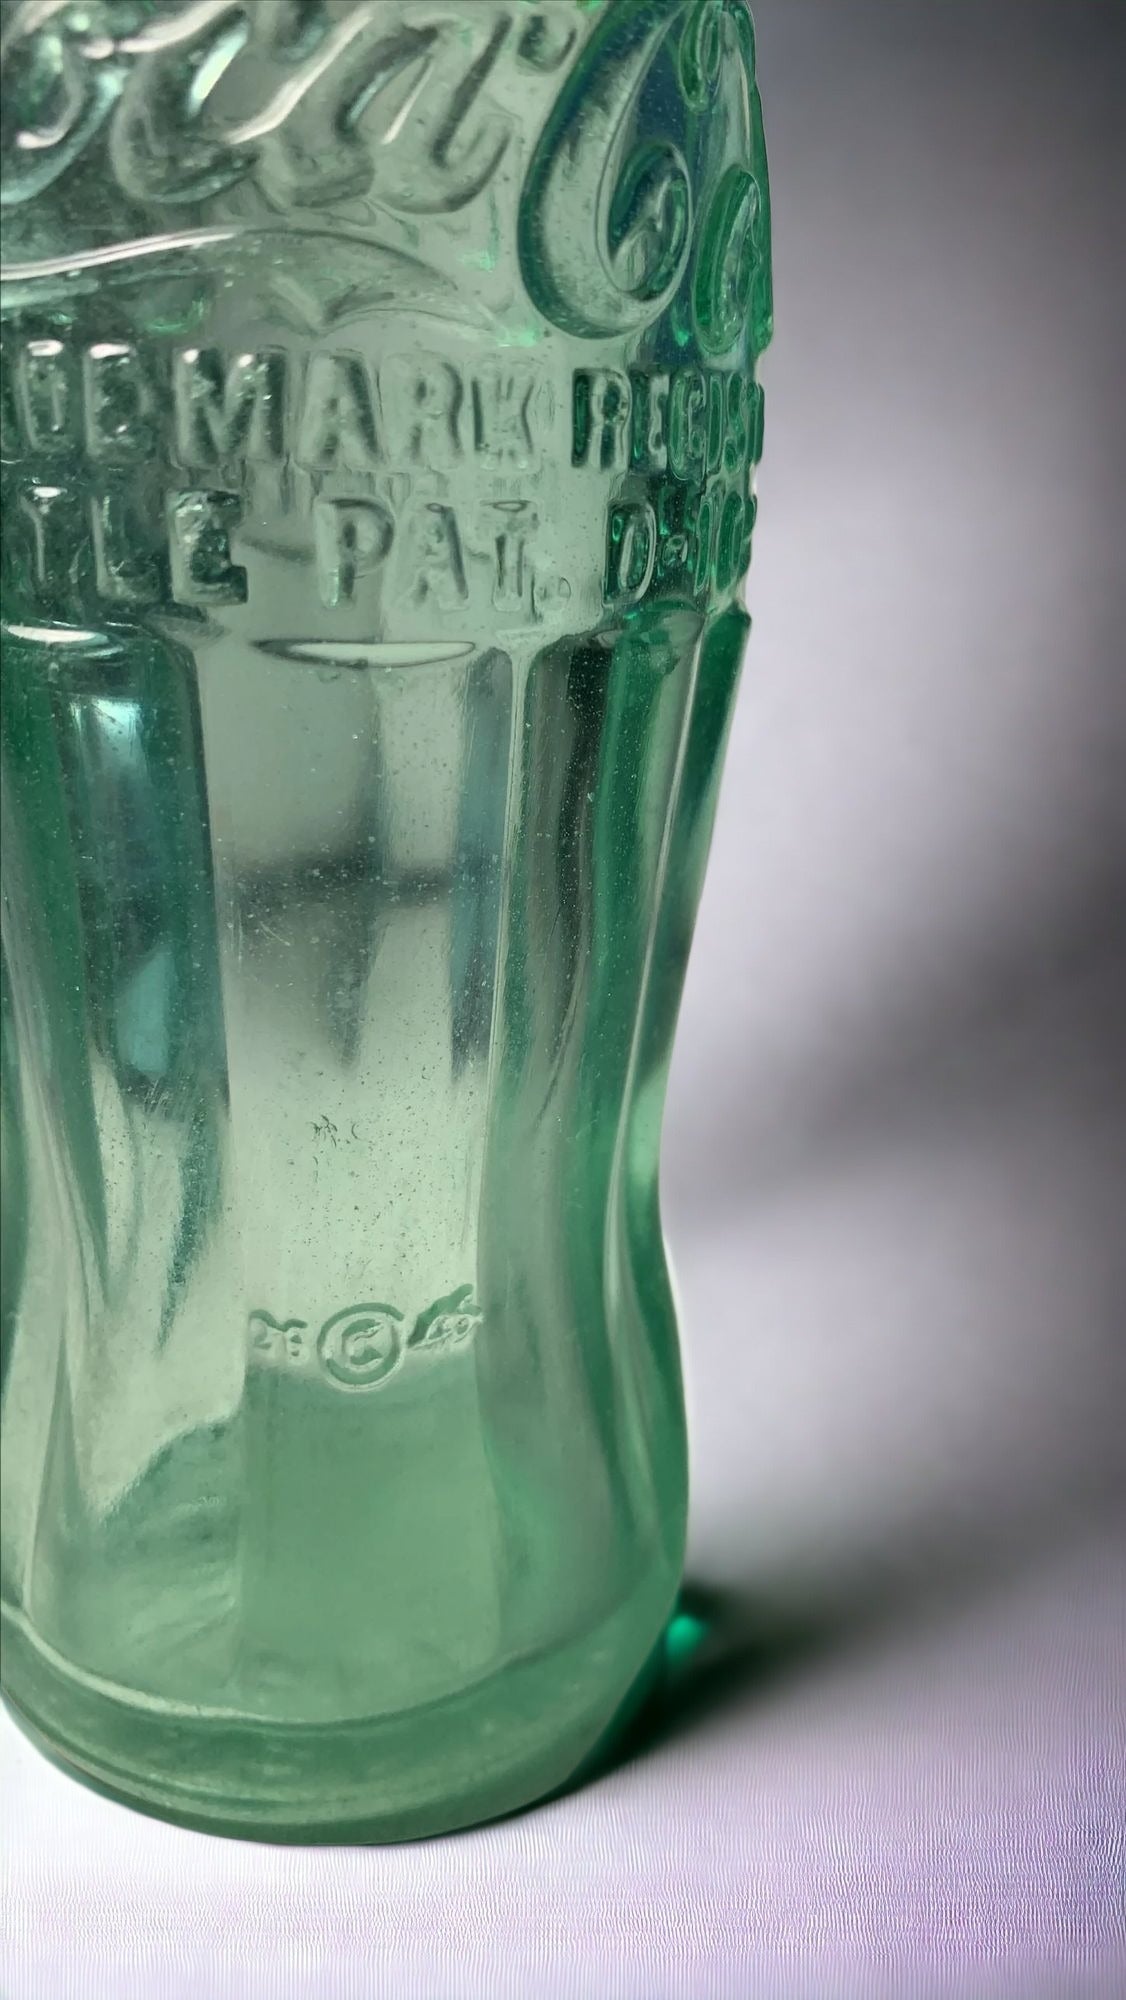 1928 Coca-Cola Bottle